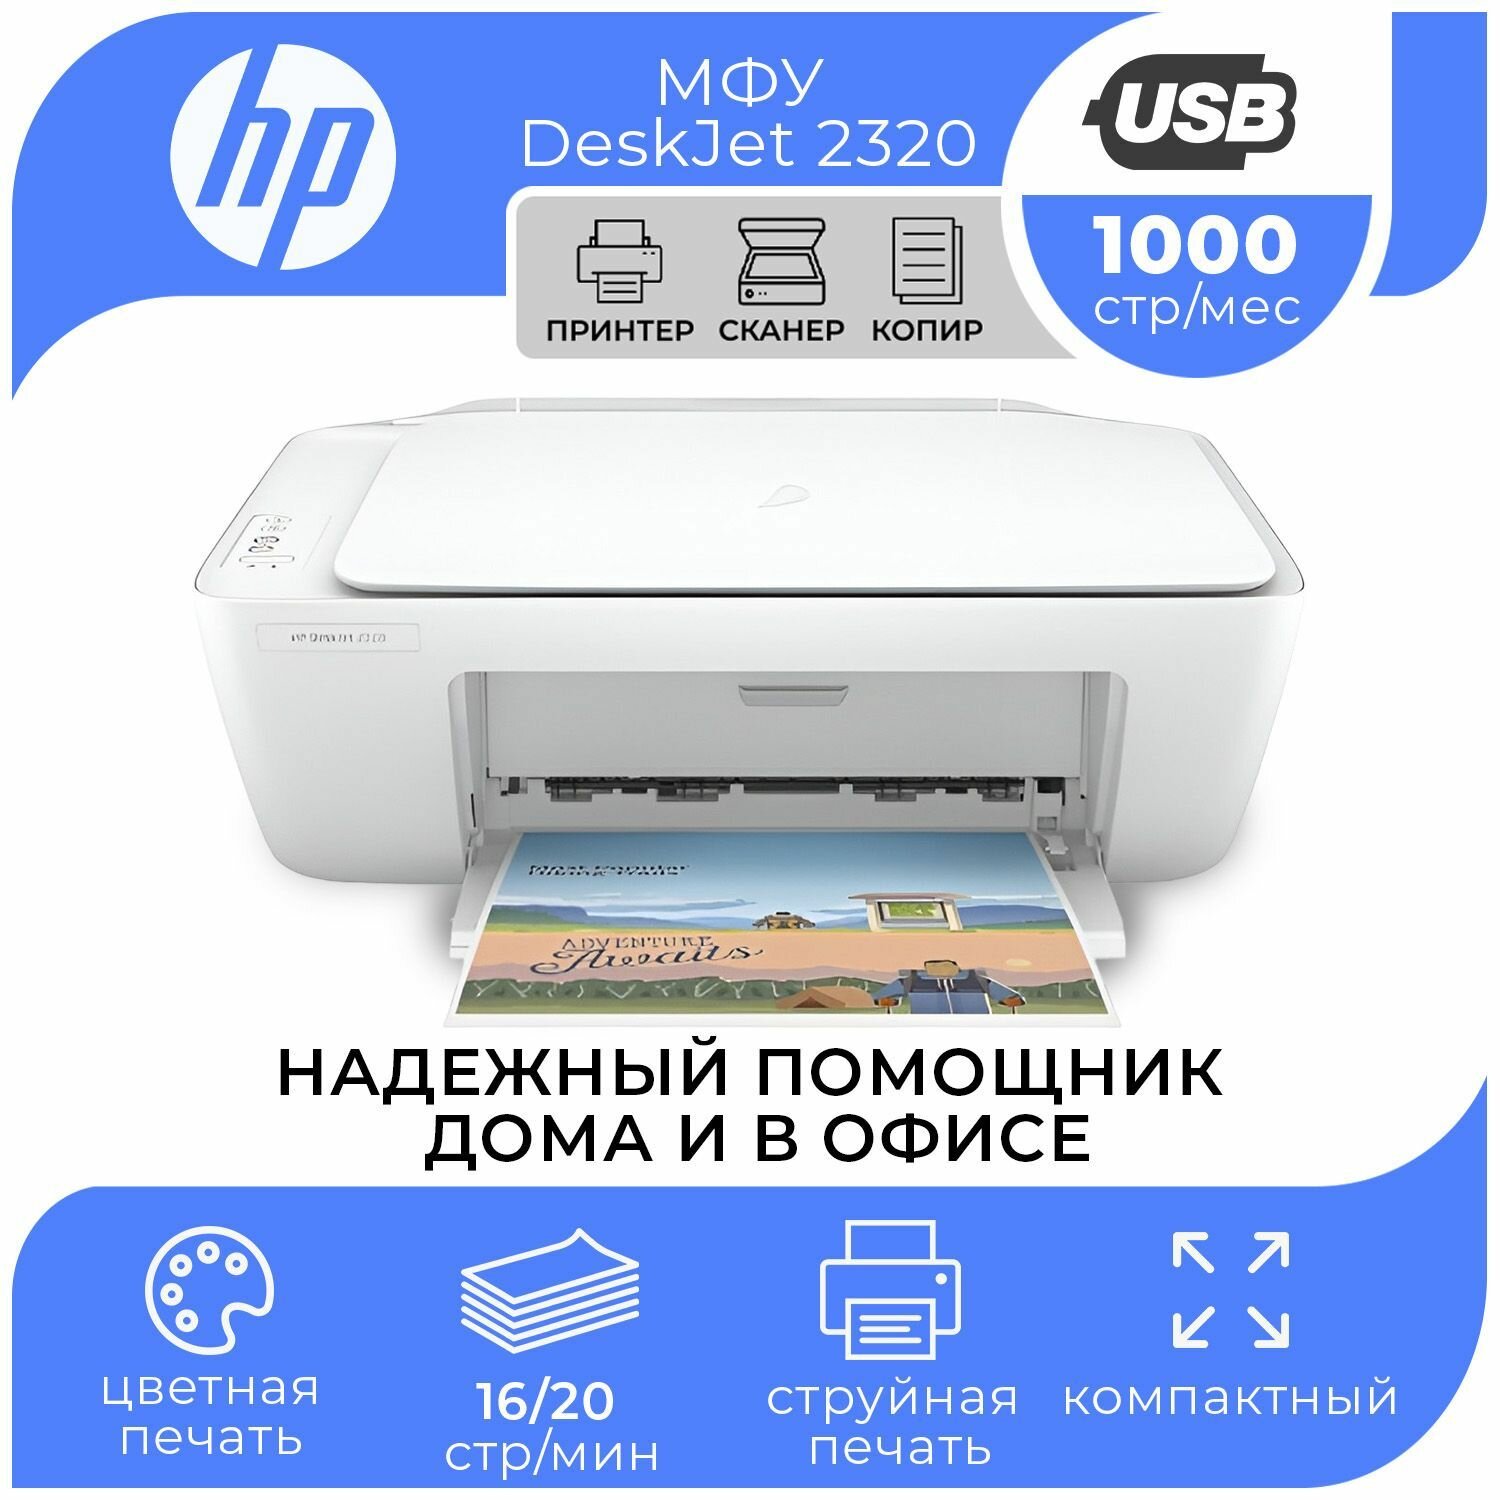 МФУ струйный цветной HP DeskJet 2320 принтер + копир + сканер для печати на бумаги А4 документов, скорость ч/б печати 20 стр/мин, скорость цветной печати 16 стр/мин, разрешение 1200 dpi, белый